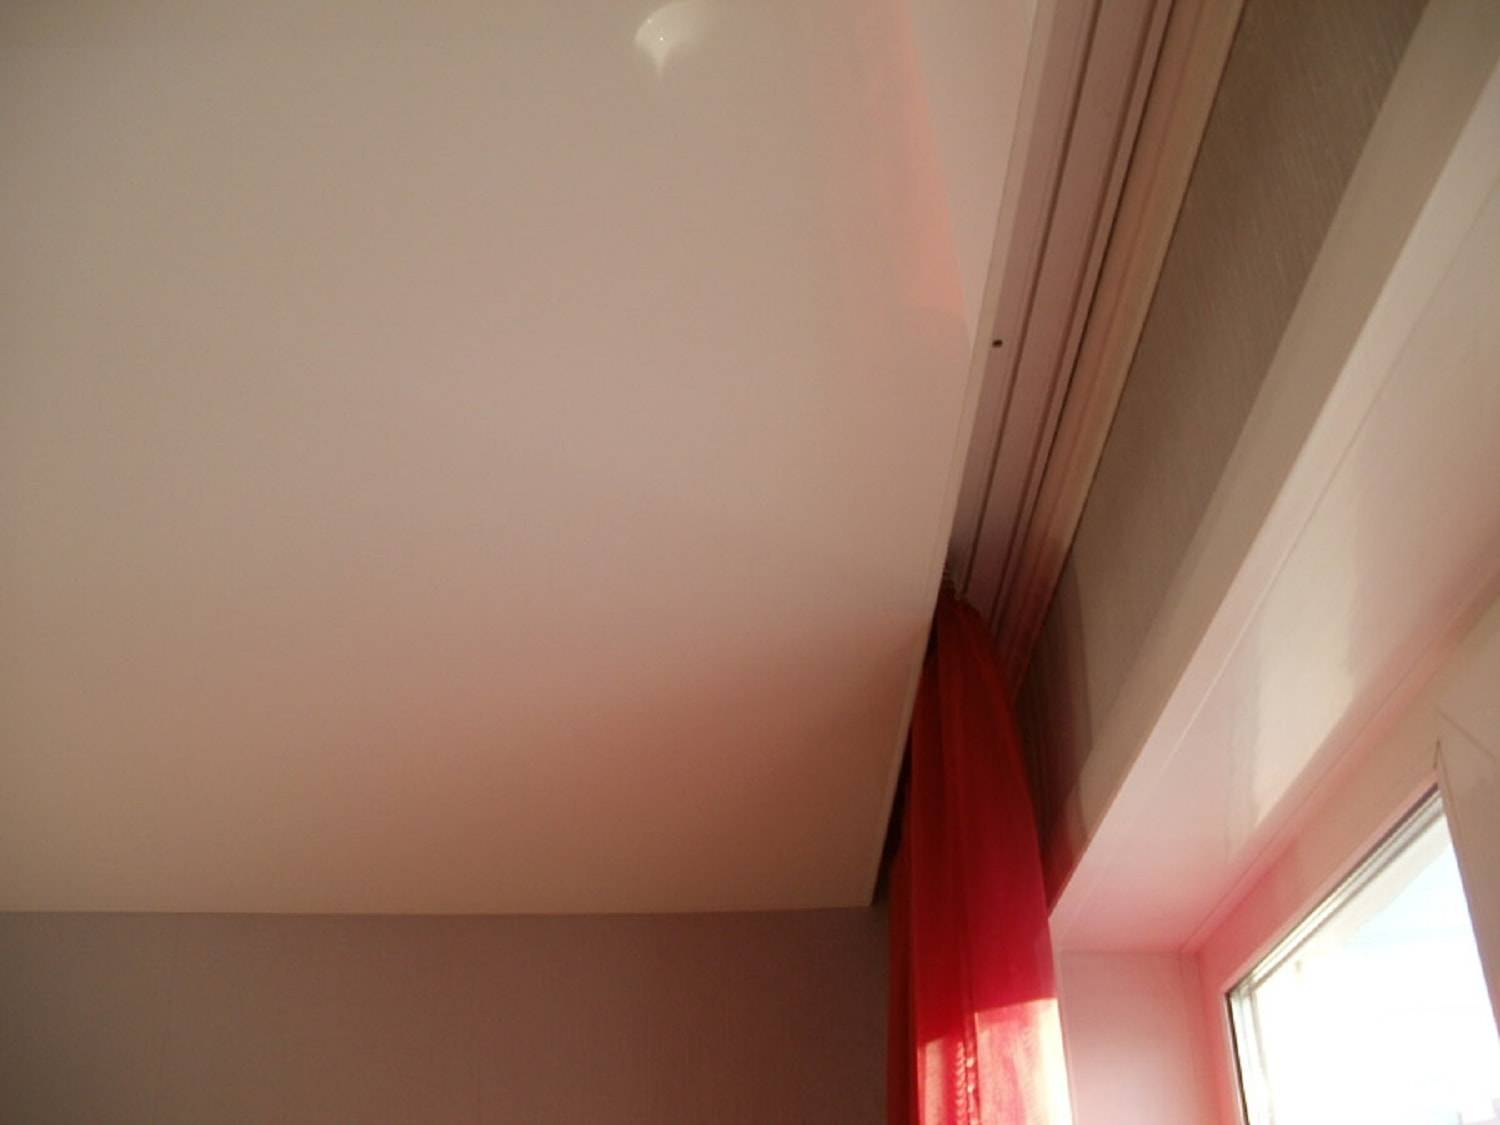 Карнизы для штор под натяжные потолки: какие гардины лучше выбрать - потолочные или настенные?